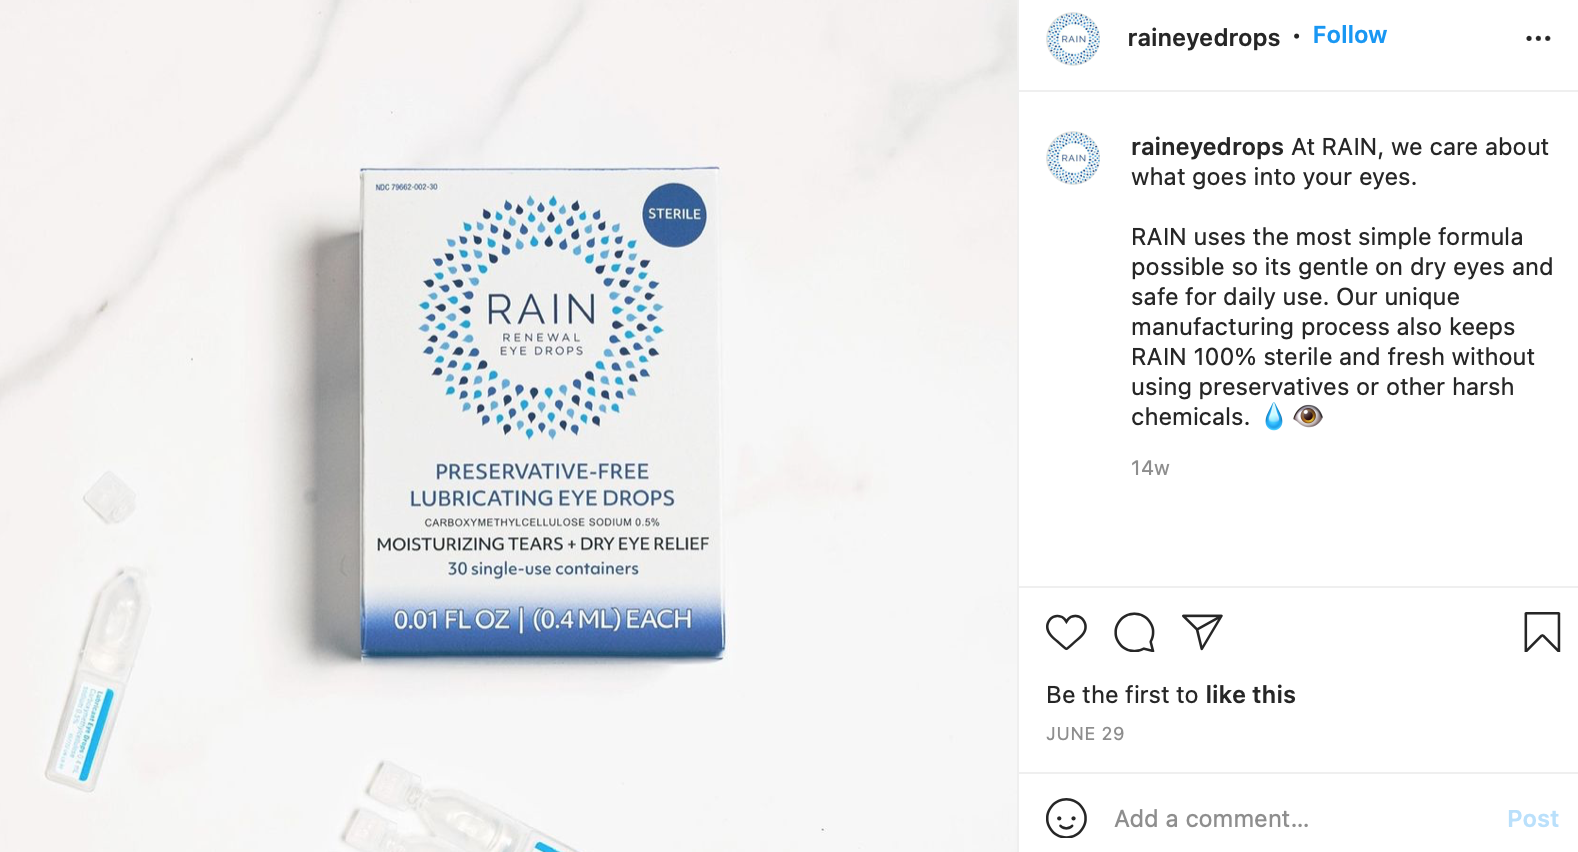 Follow rain Eye Drops on Instagram